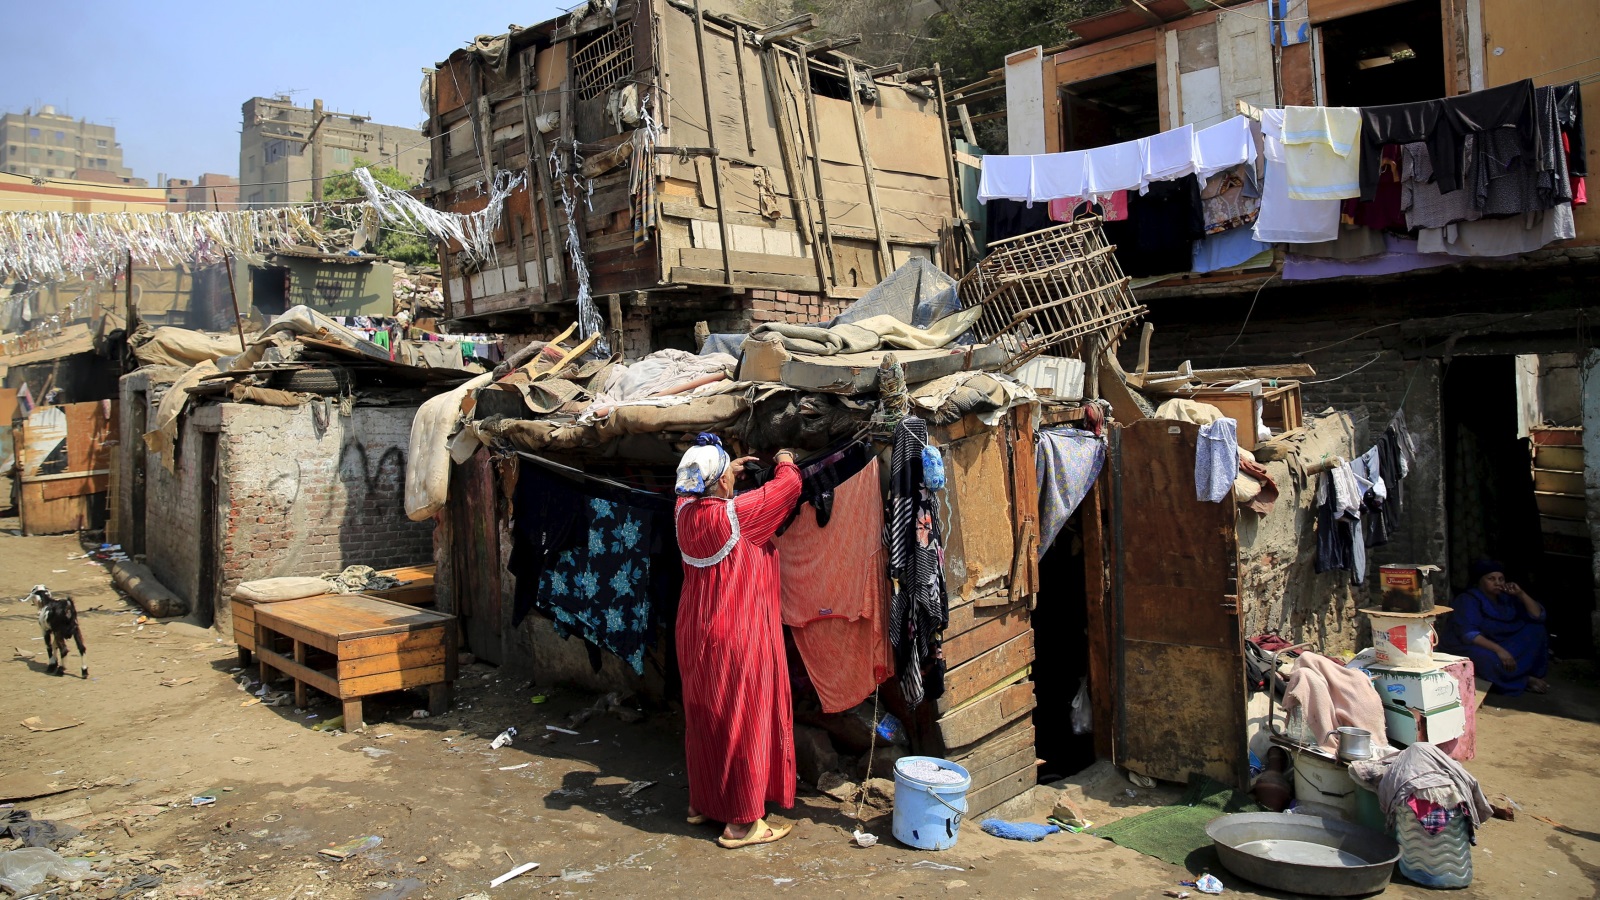 أعلن الجهاز المركزي للتعبئة والإحصاء في مصر عن تزايد نسبة المصريين تحت خط الفقر بالنسبة إلى 26.3%، ما يعني أن أكثر من ربع المصريين دون خط الفقر  (رويترز)